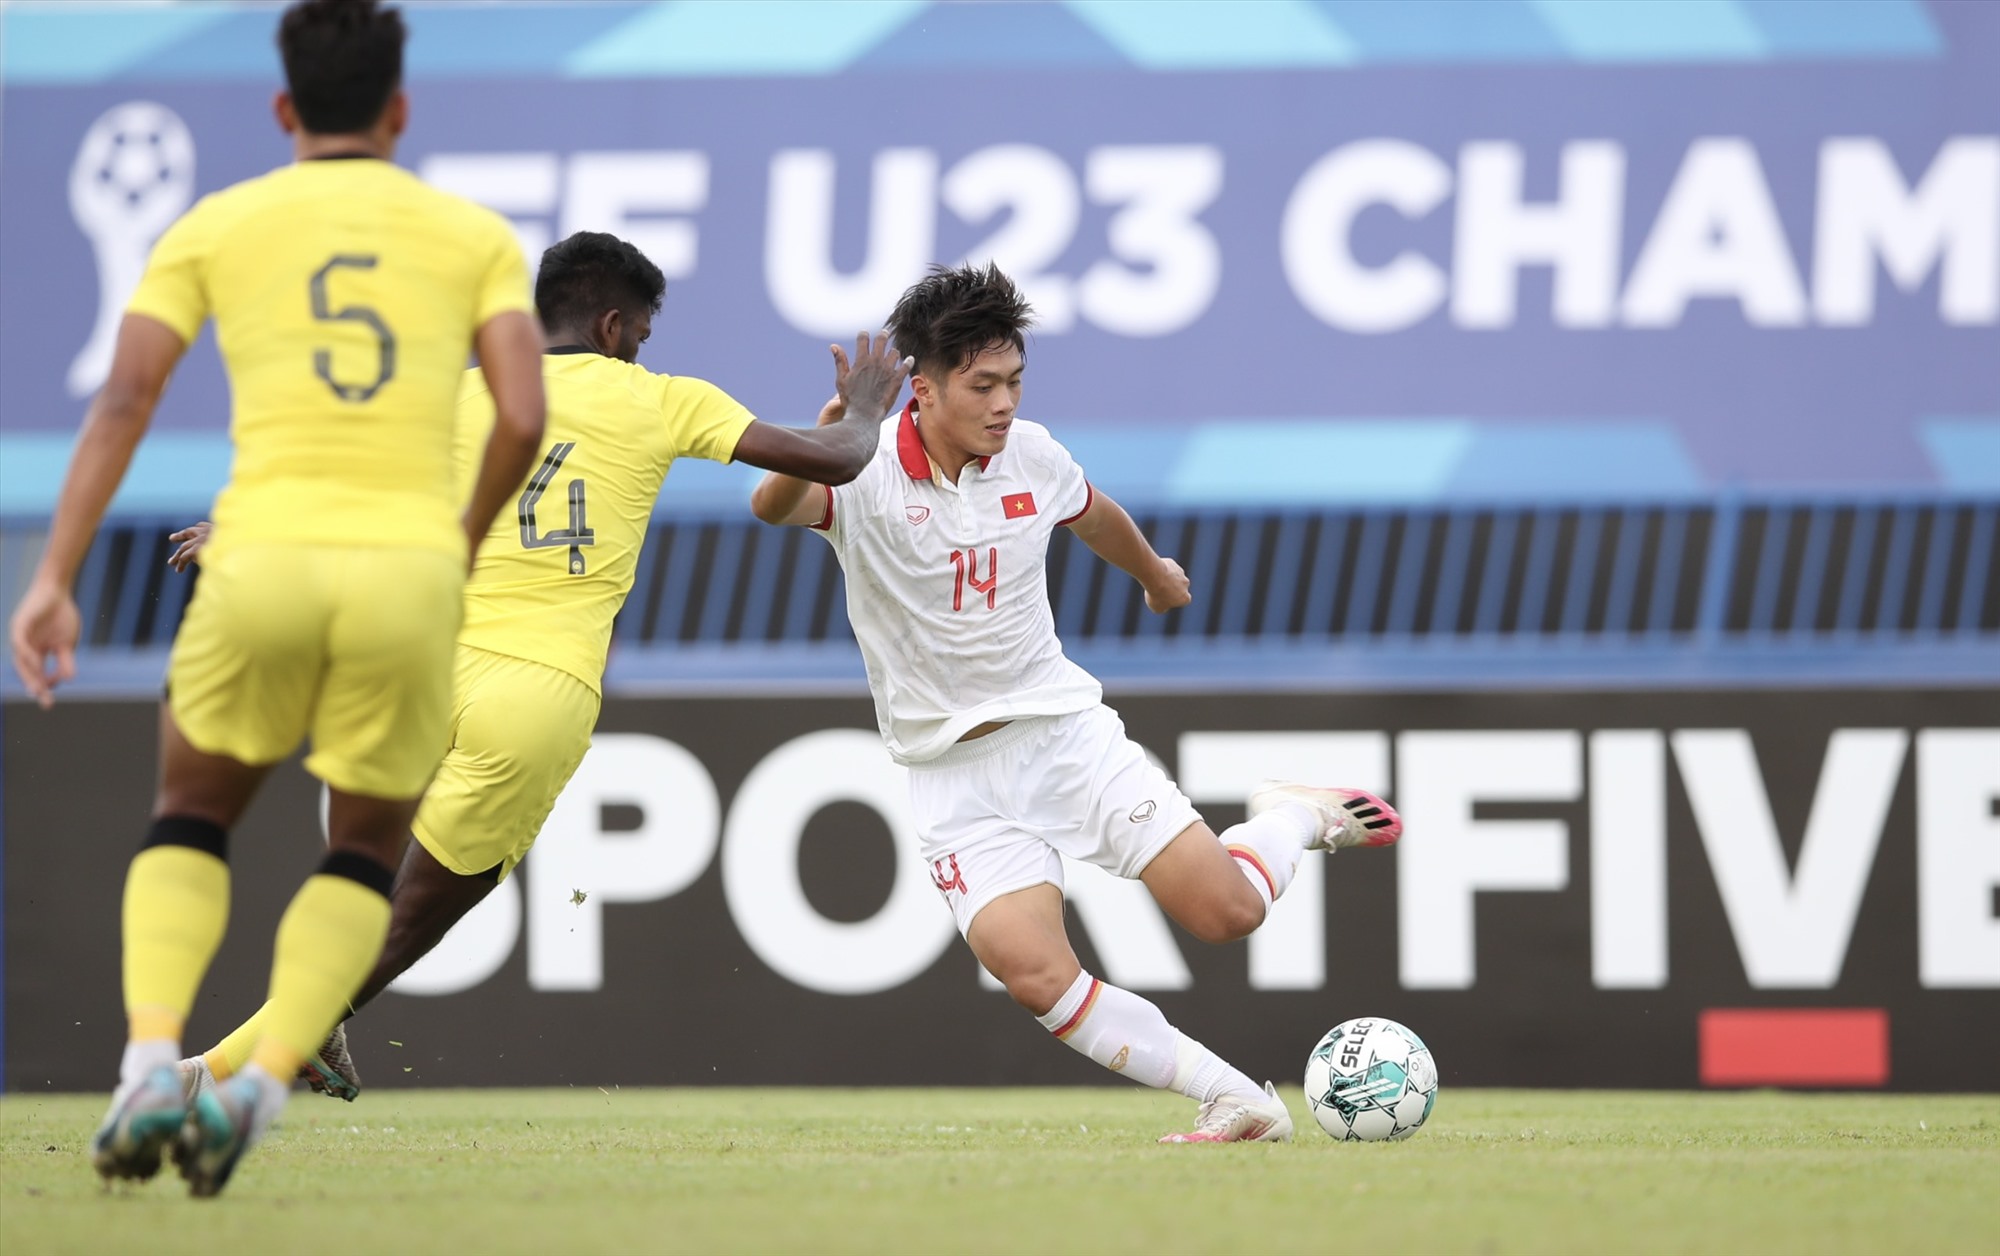 Phút 32, tiền đạo Quốc Việt quyết định dứt điểm từ khoảng cách bên ngoài vòng cấm vào lưới U23 Malaysia, nâng tỉ số 2-0 cho U23 Việt Nam.